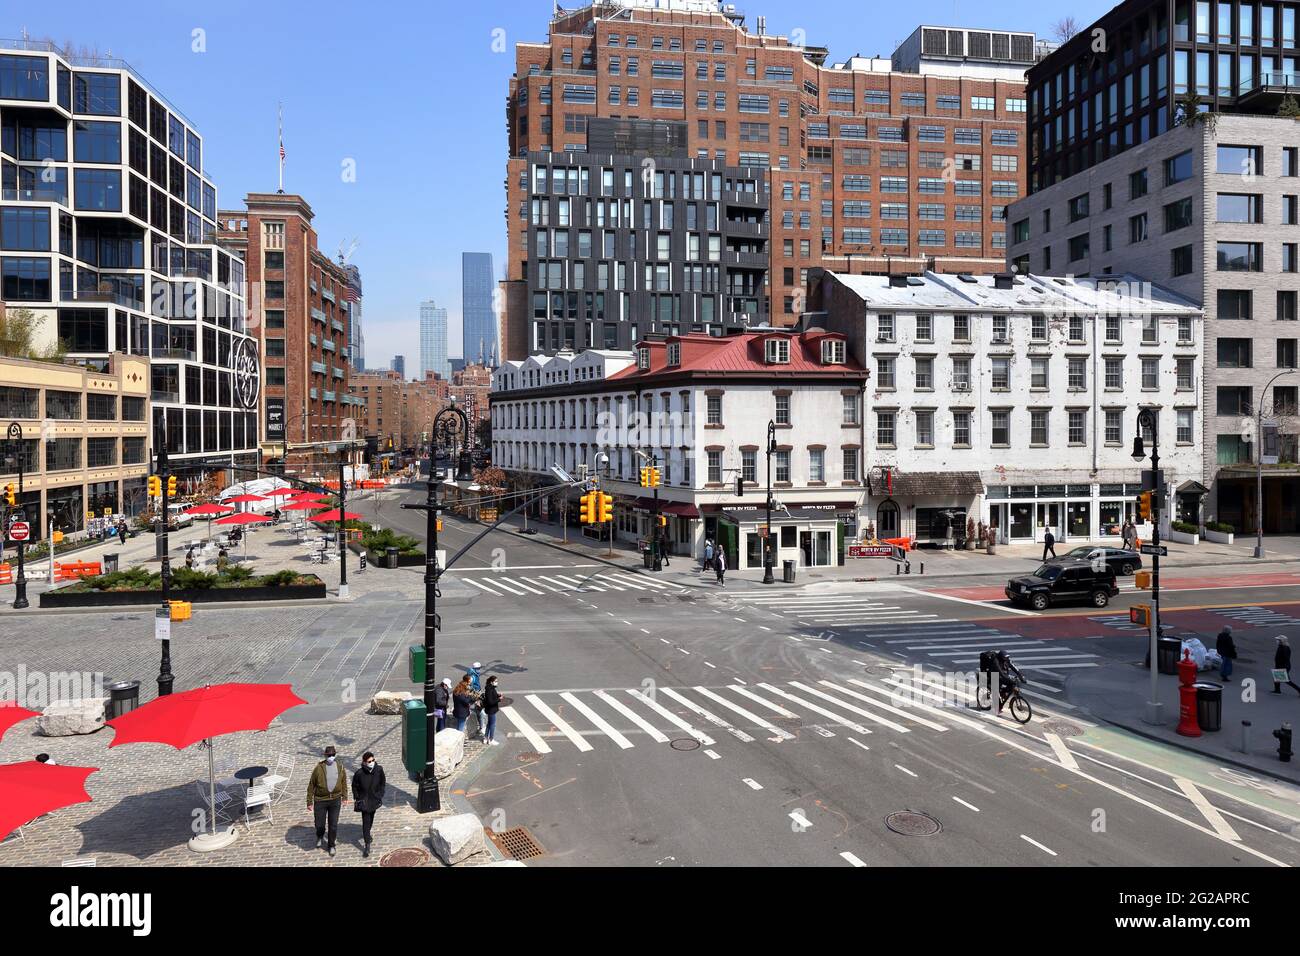 Intersección de la Nointh Ave y la W 14th St en el barrio de Gansevoort Market/Meatpacking District de Manhattan, Nueva York Foto de stock